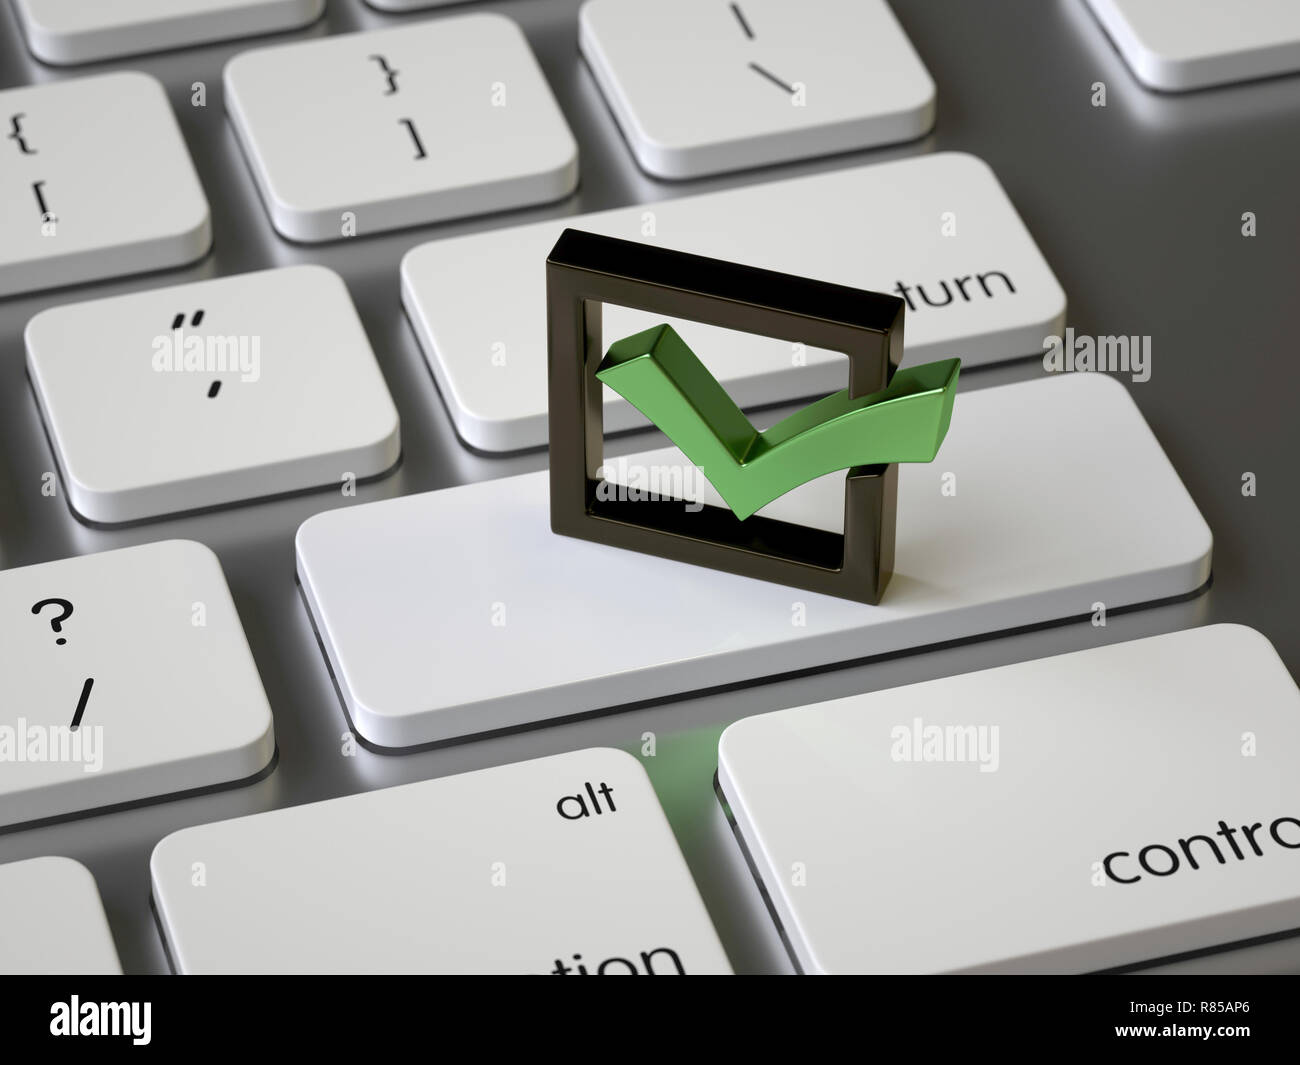 Il segno di spunta sulla tastiera, rendering 3d,immagine concettuale Foto Stock